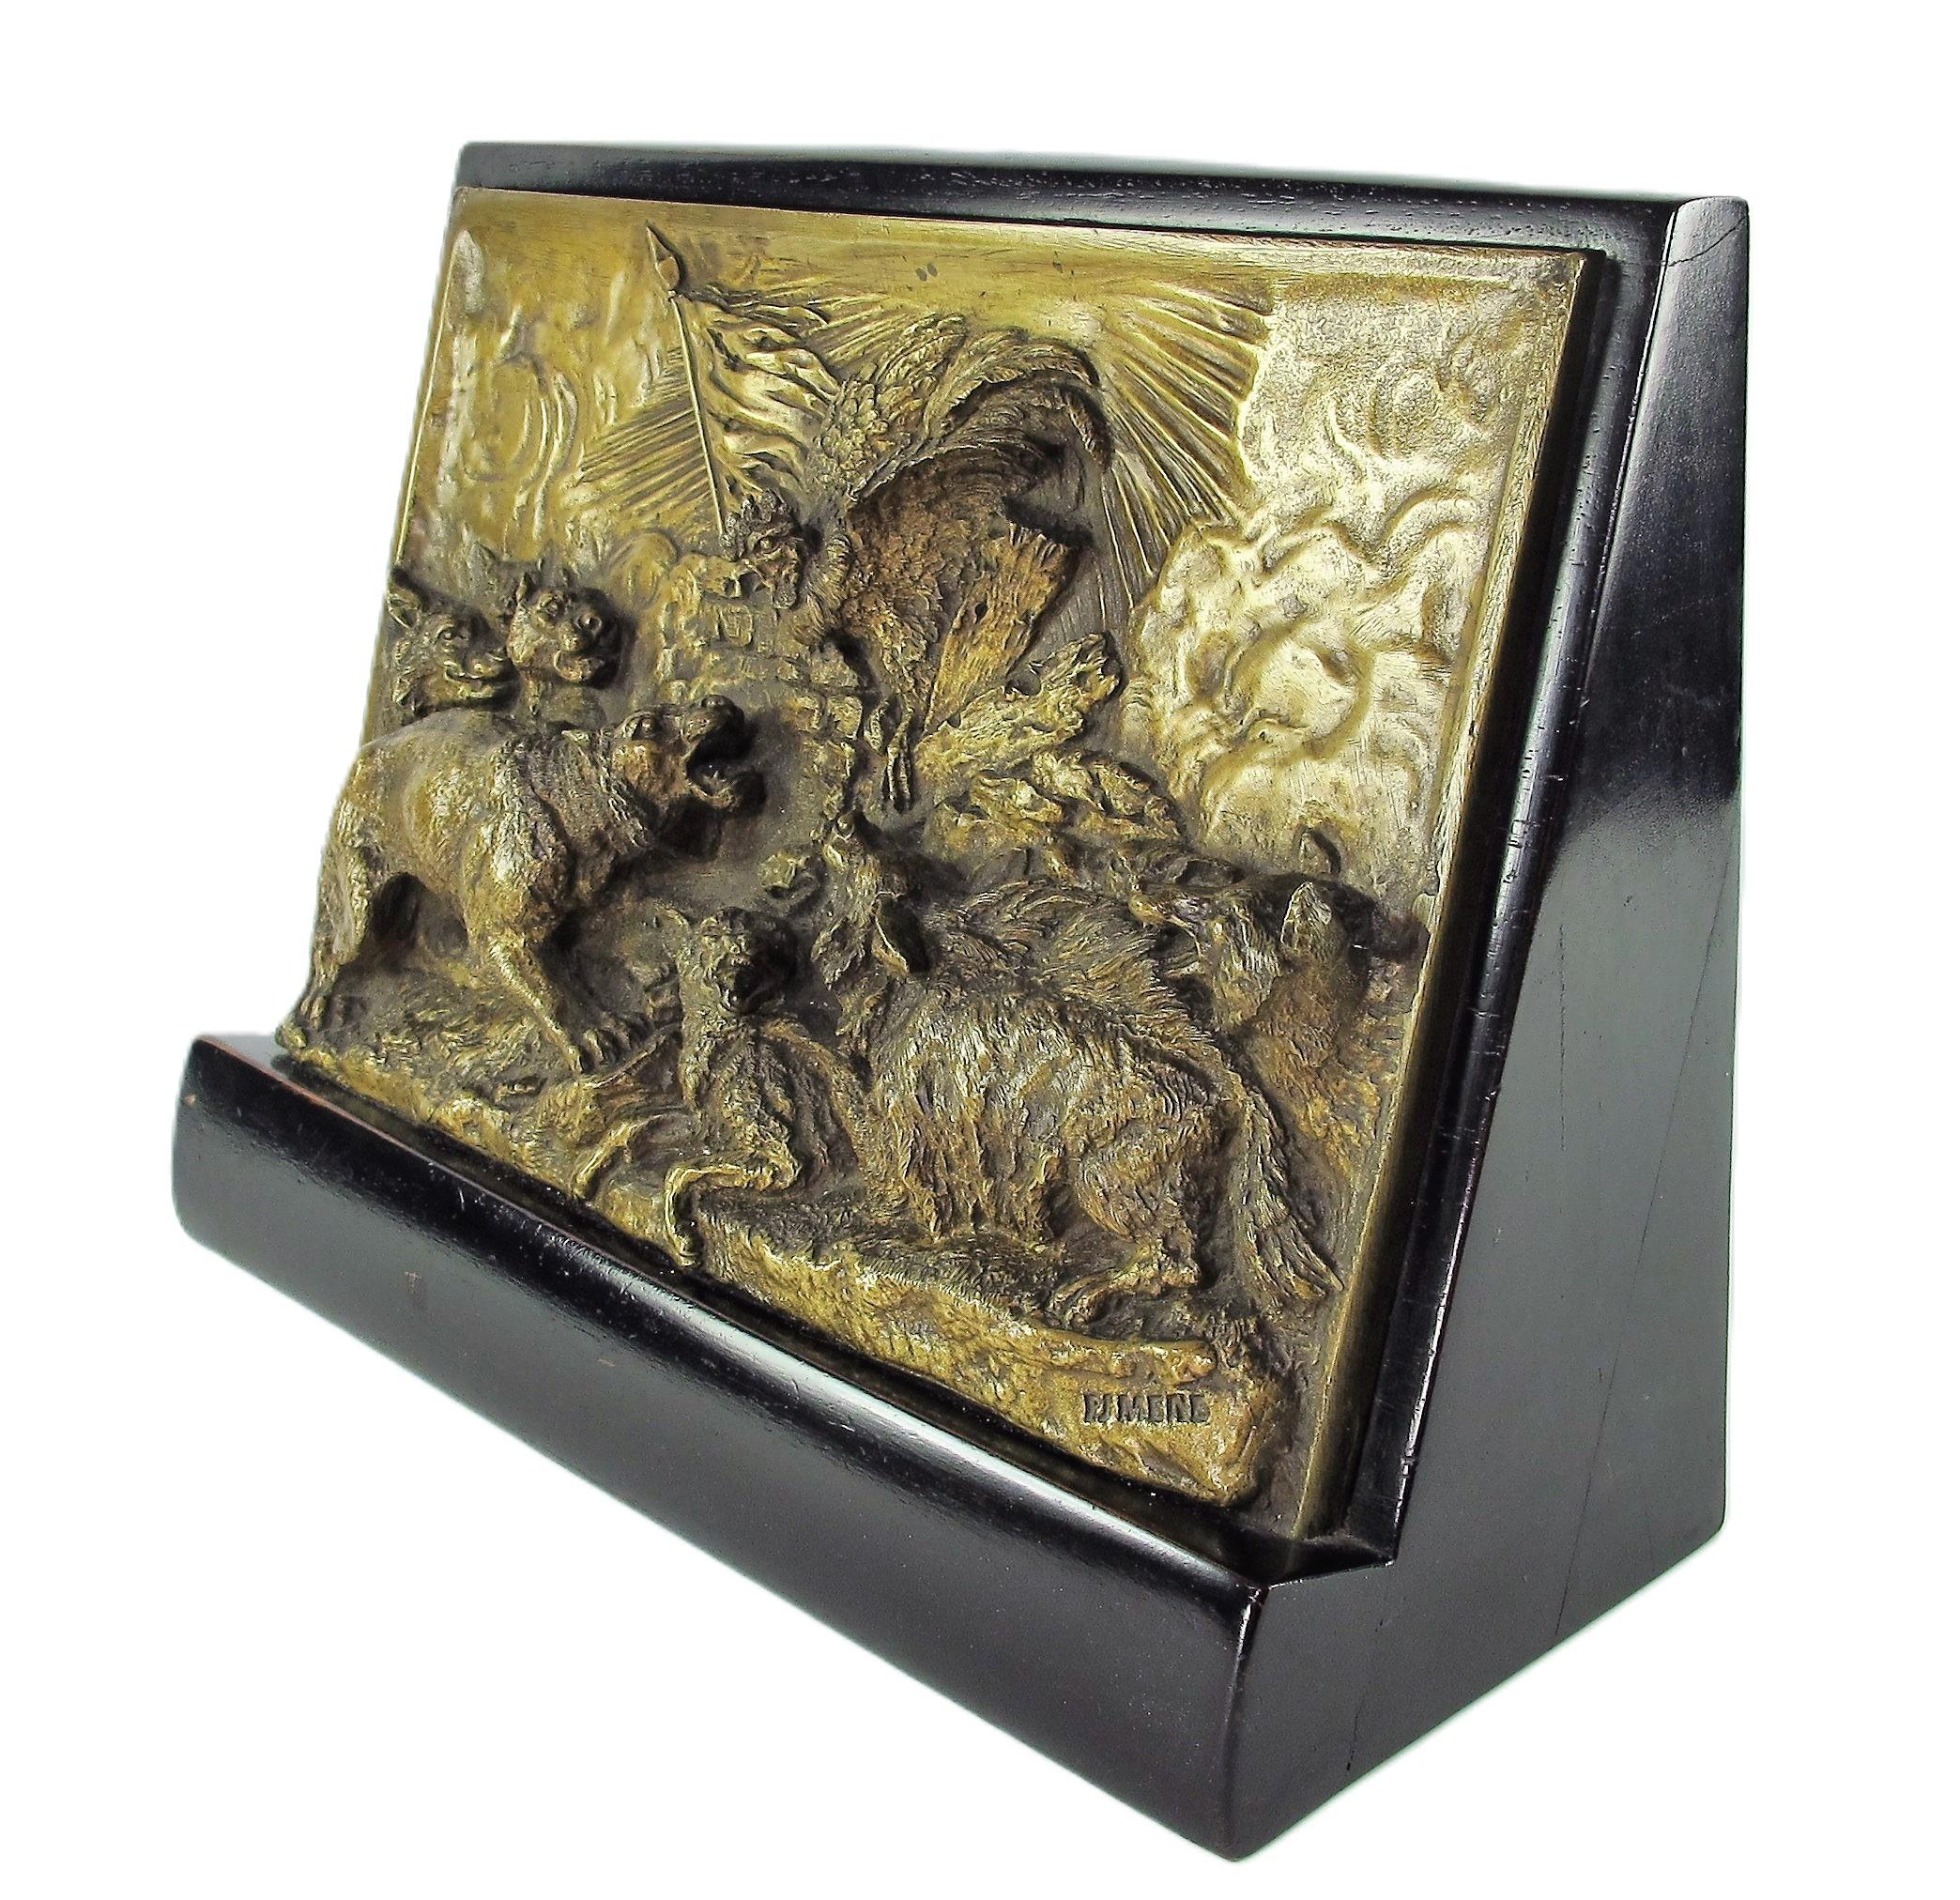 Rarissime bronze de Pierre-Jules Mêne (1810-1879) représentant un sujet allégorique sur la défense de Mazagran, un exemple actuellement identifié. Sculpture en bas relief, transposition animalière symbolique qui évoque la bataille de Mazagran, qui